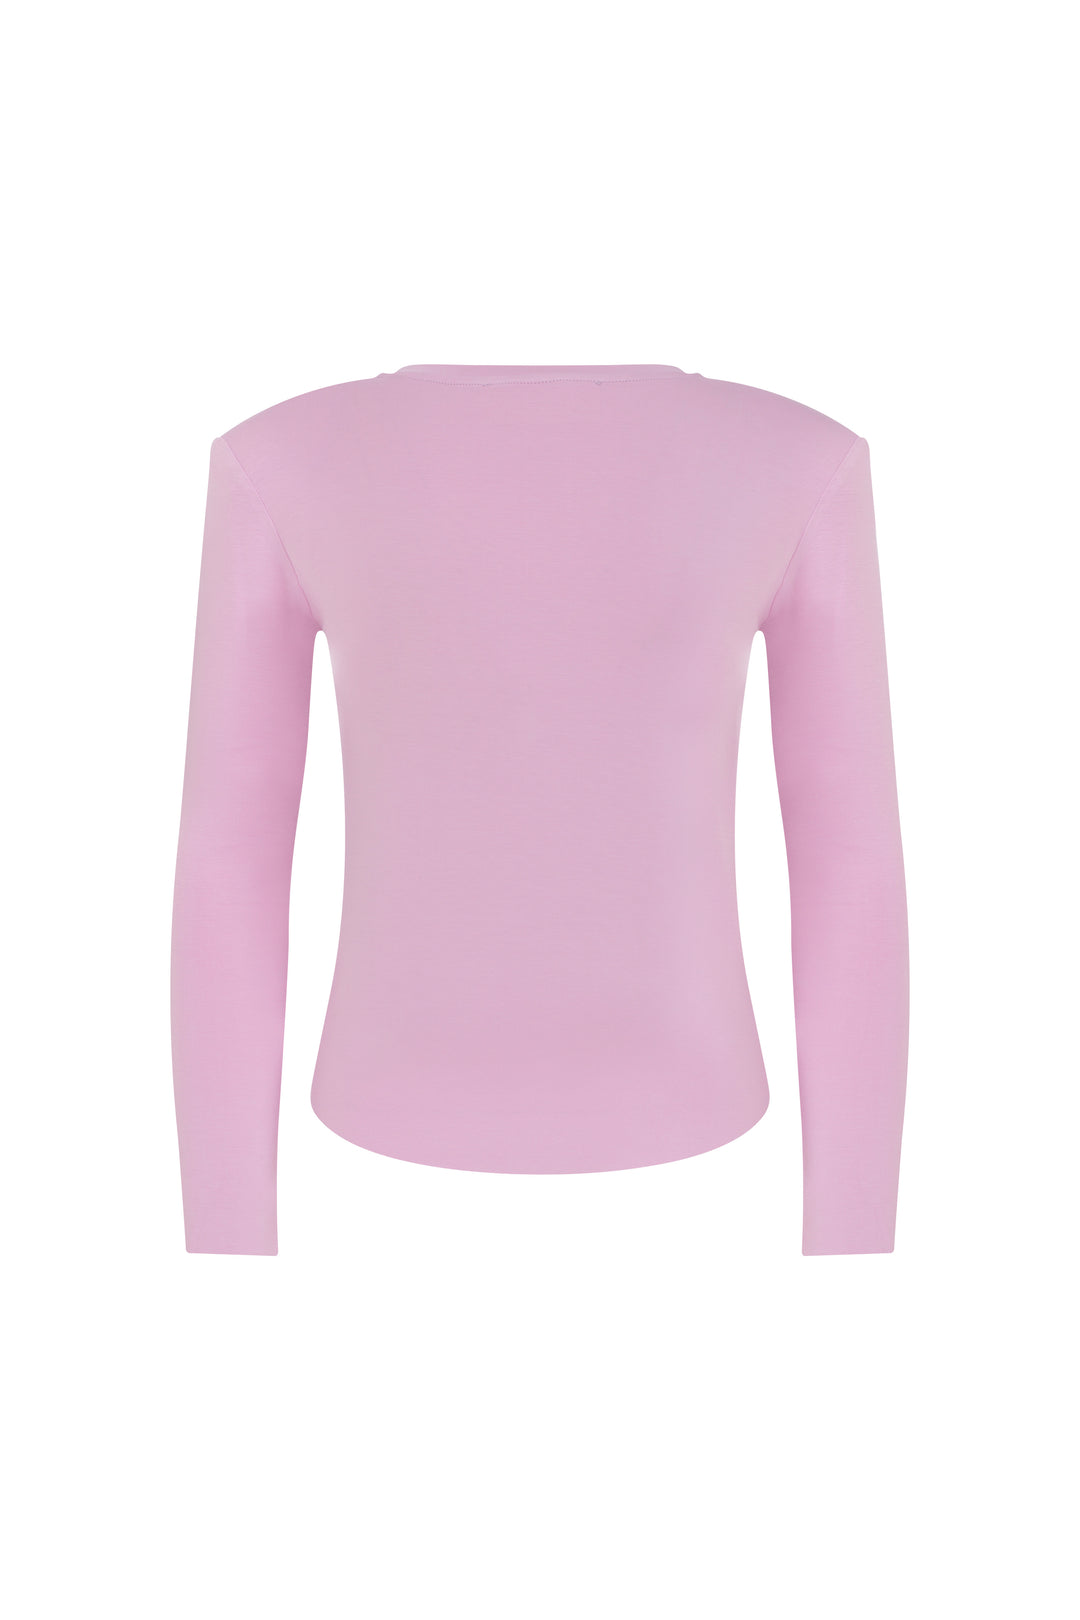 Jupiter - Pink Long Sleeve T-Shirt With Shoulder Pads